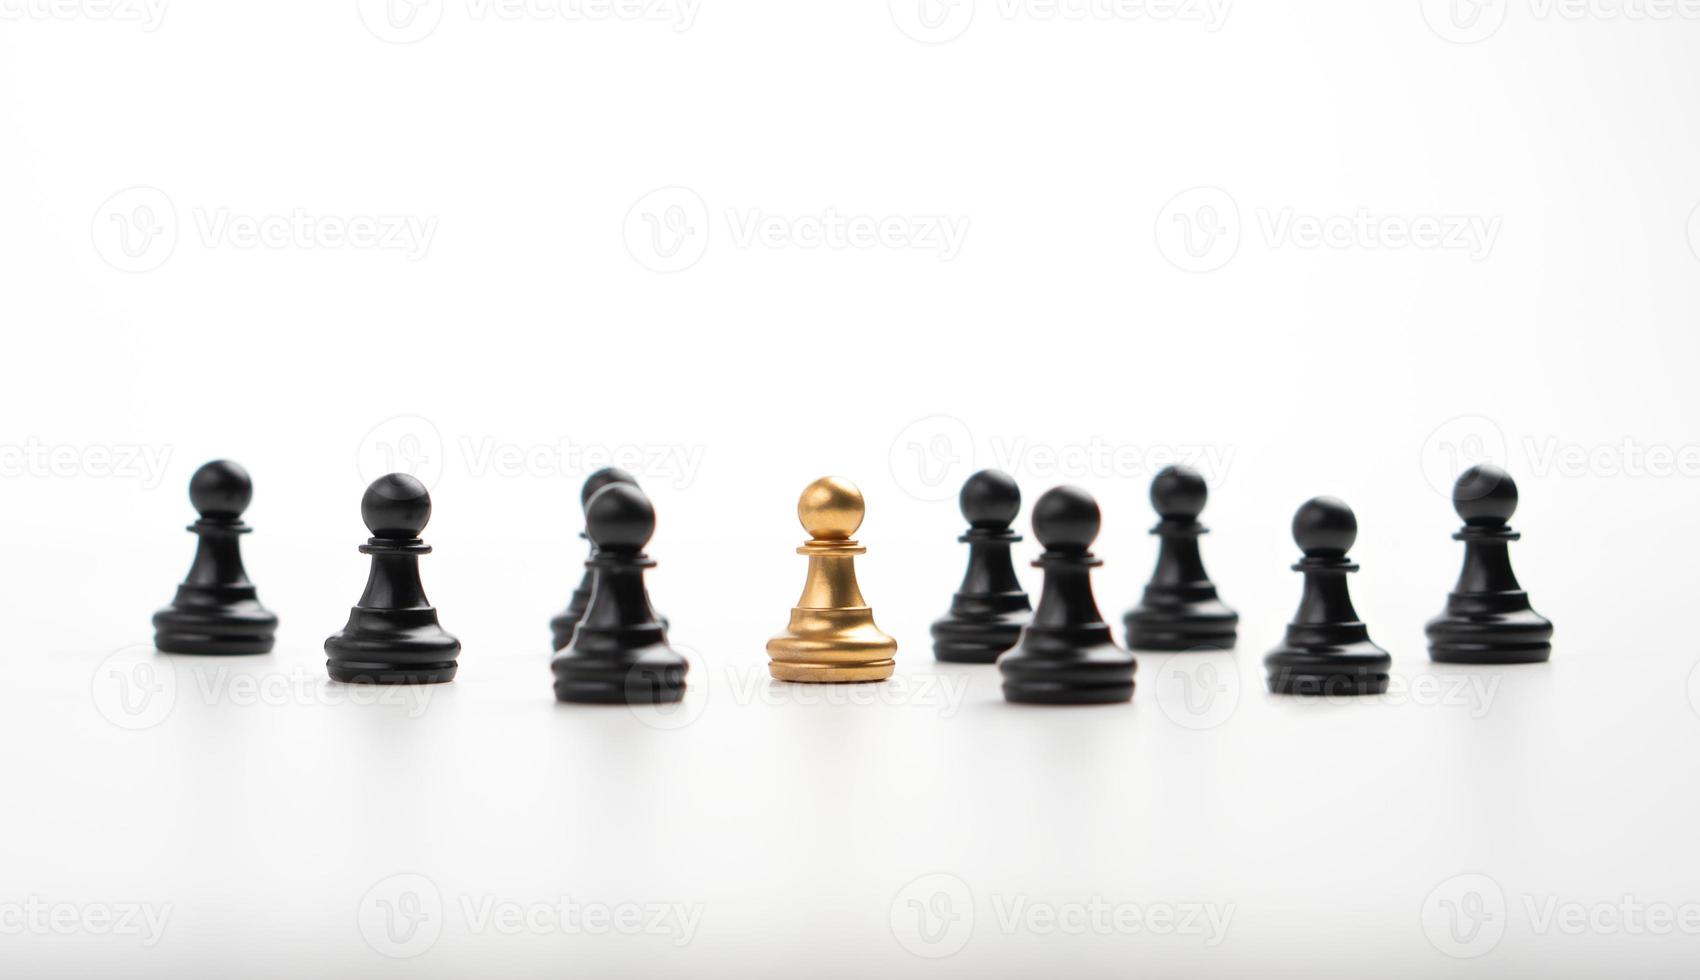 gyllene schackbonde står tillsammans med laget för att visa inflytande och egenmakt. koncept för företagsledarskap för ledarteam, framgångsrik tävlingsvinnare och ledare med inflytande foto